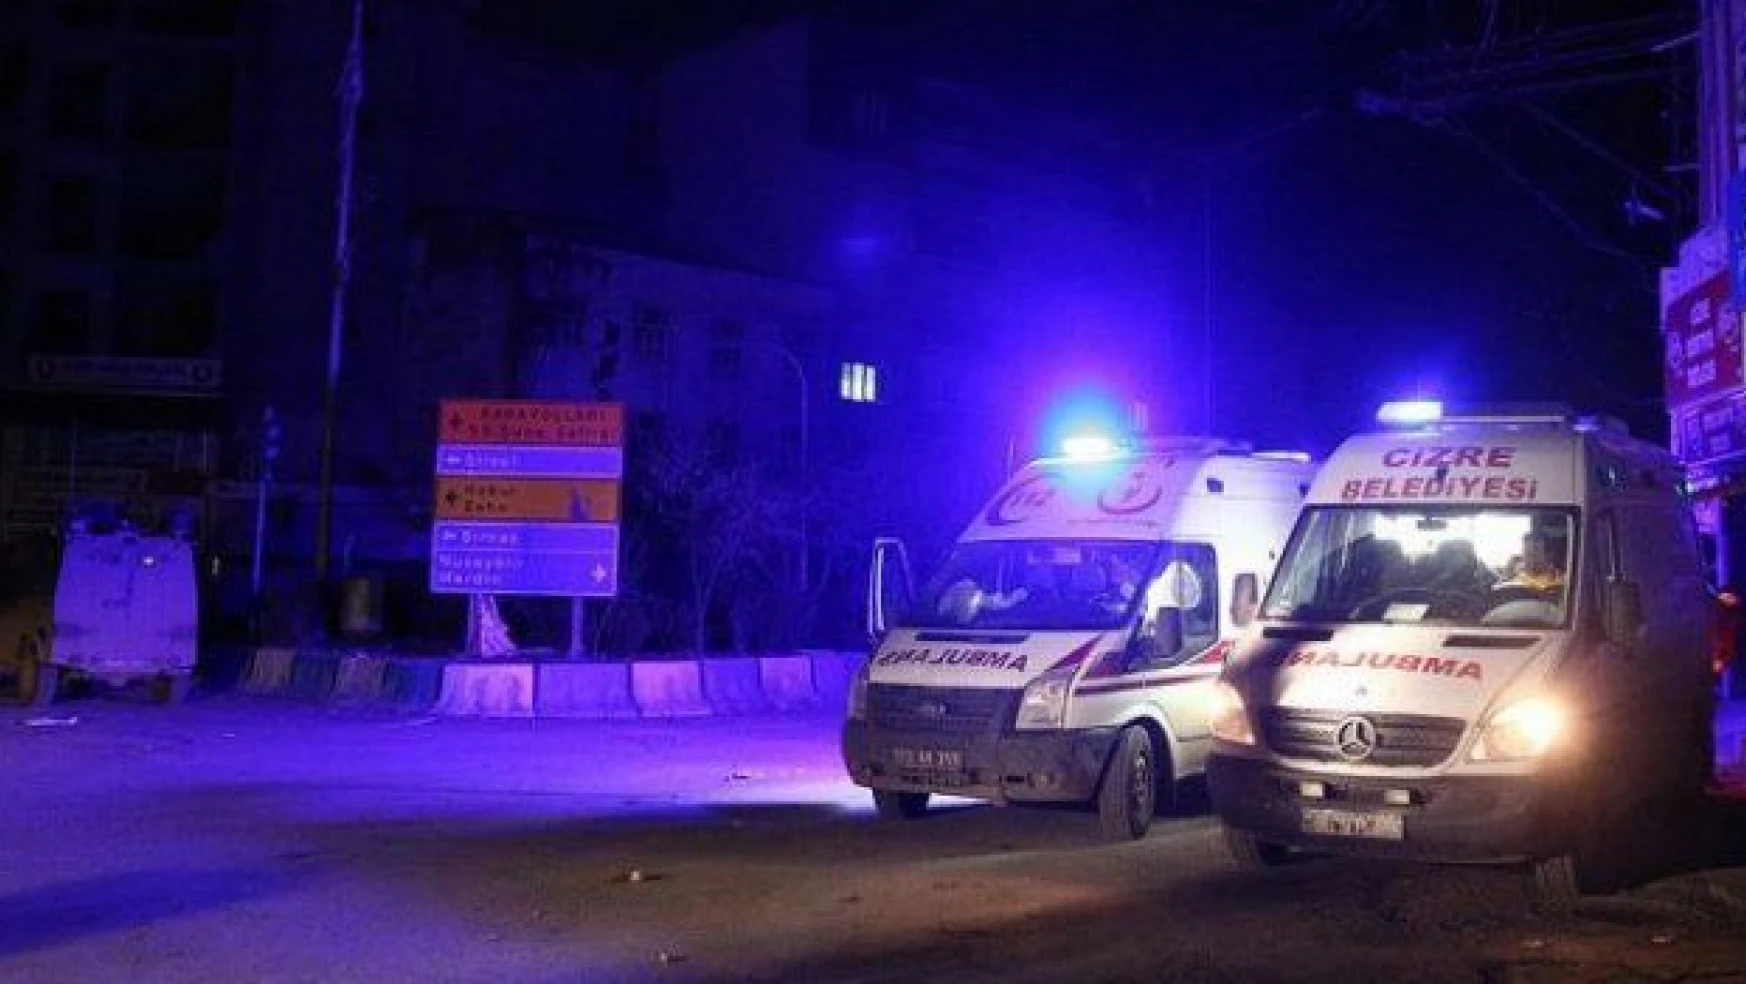 HDP'nin 'Cizre'de yaralıların bulunduğu yeri polis bombaladı' iddiasına İHA'lı cevap